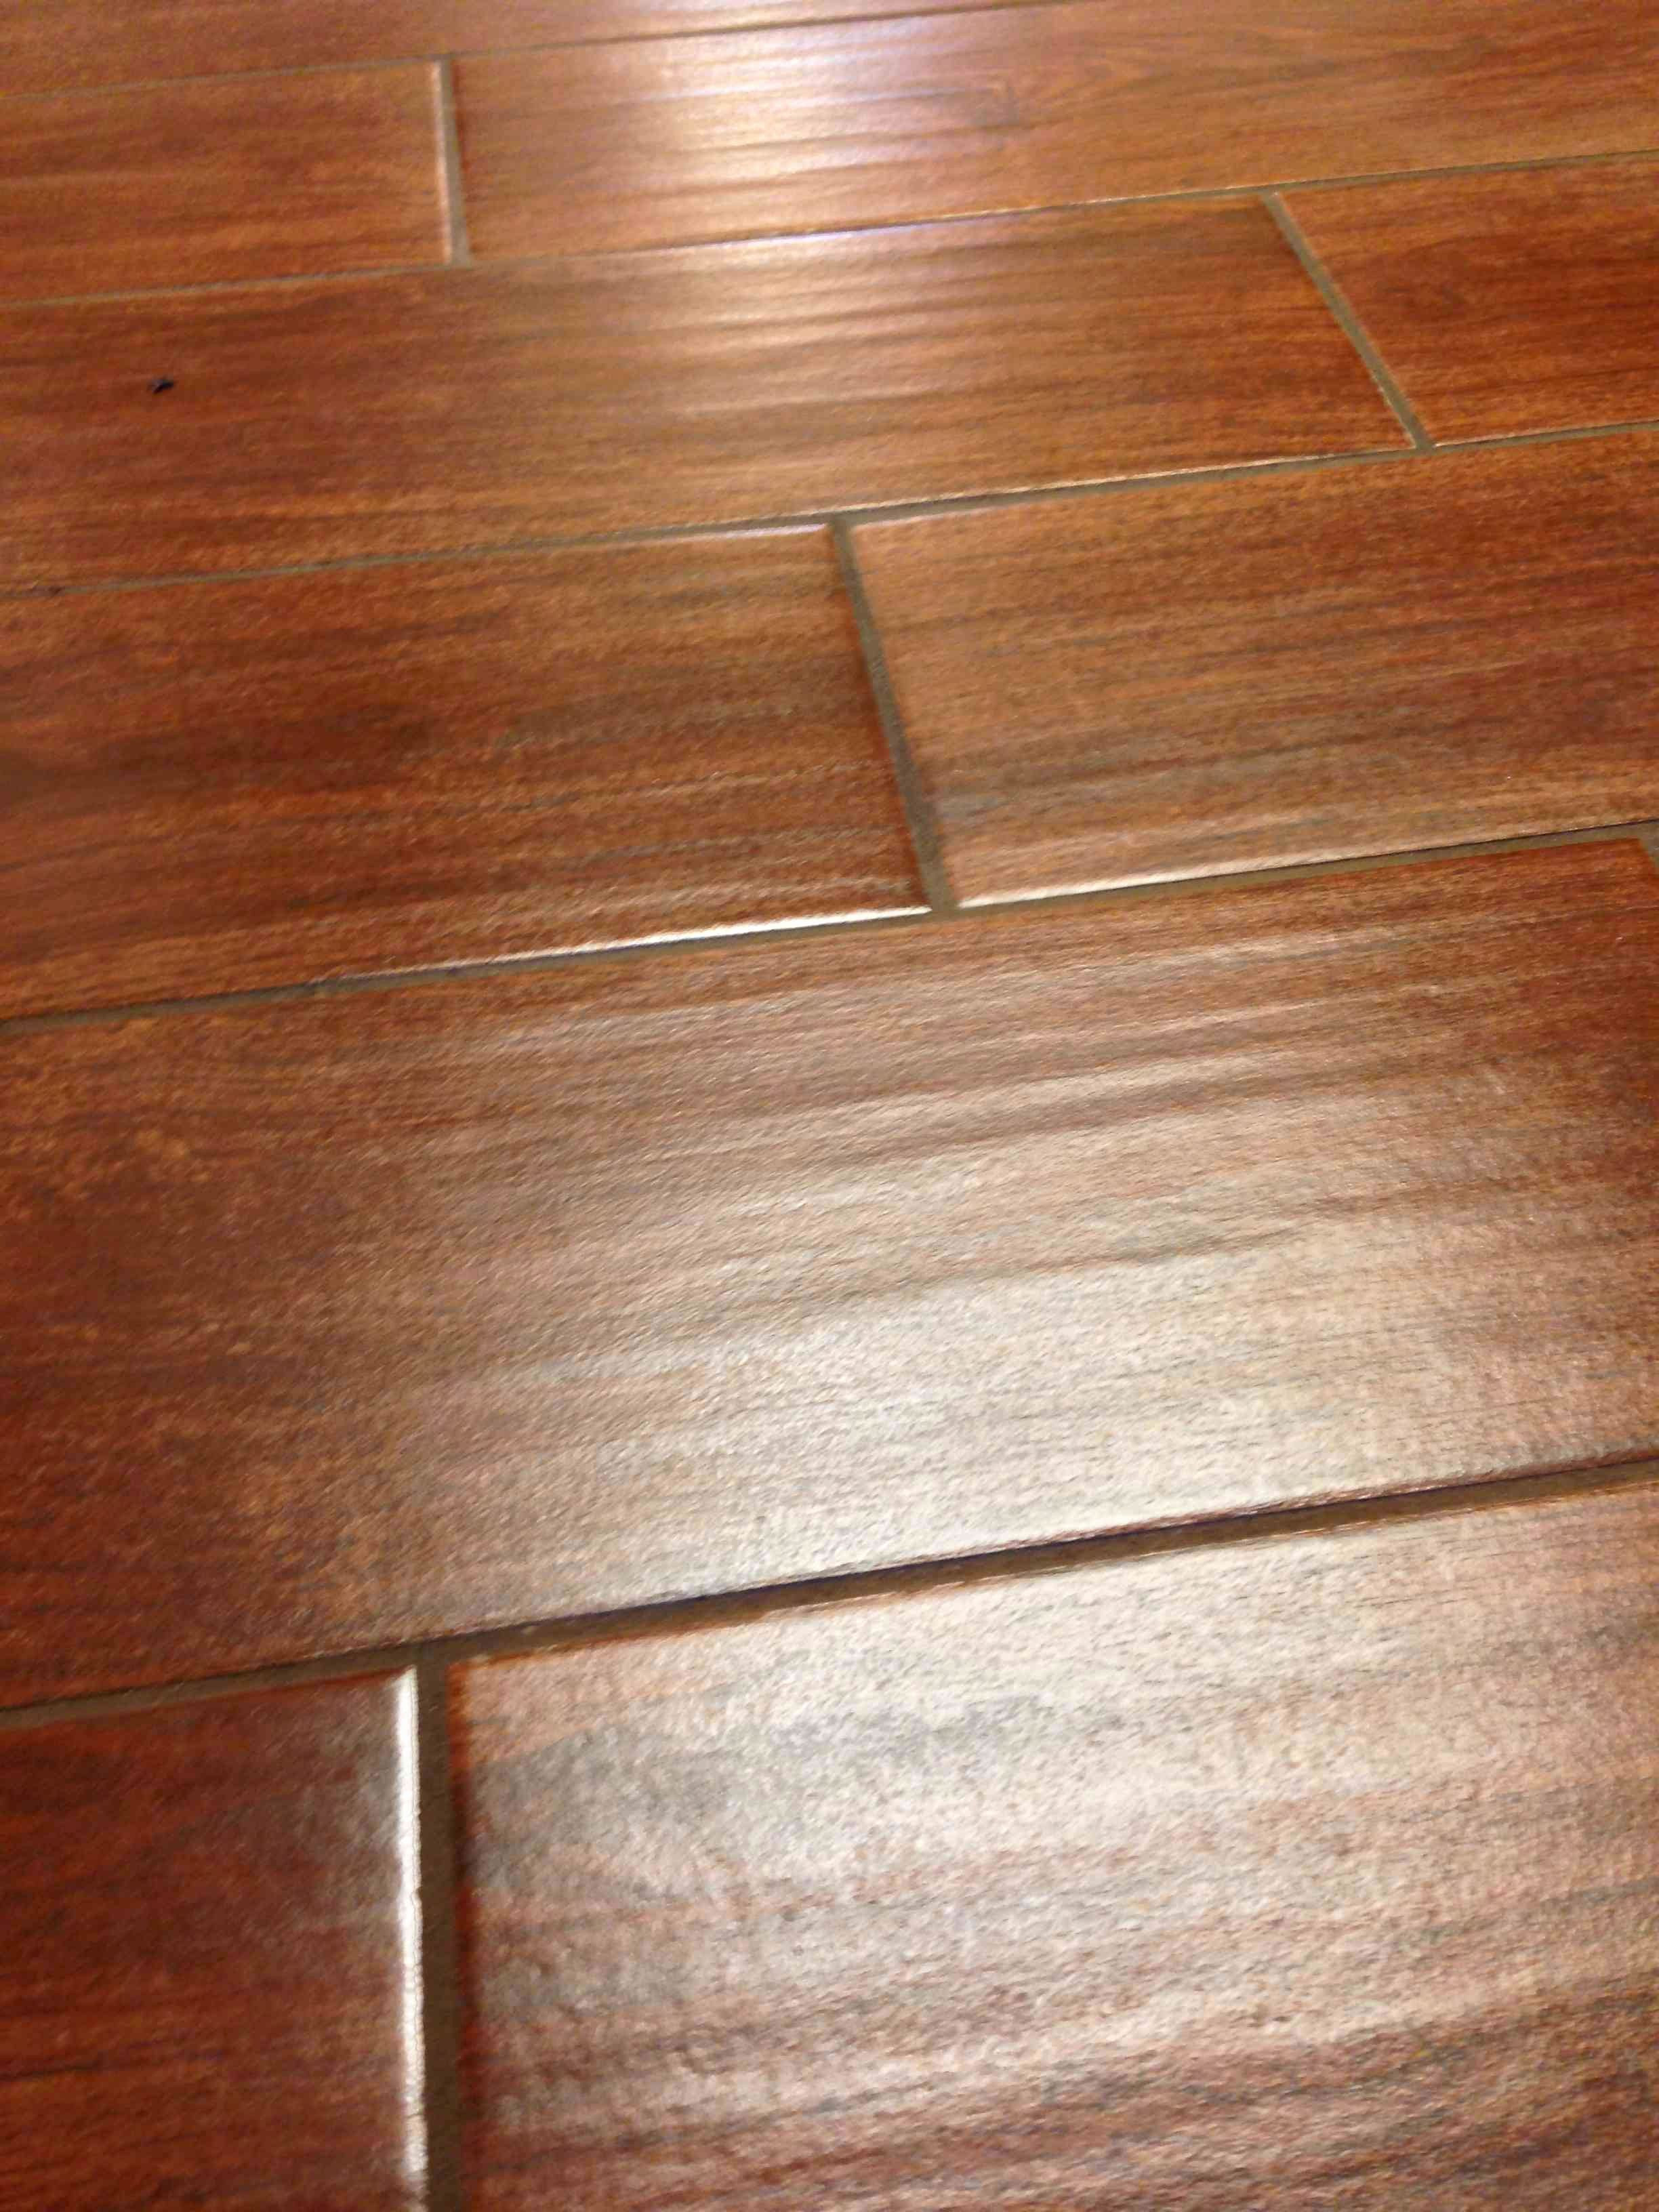 best way to install engineered hardwood flooring on concrete of 40 best type of hardwood flooring images inside harwood flooring best tile that looks like hardwood floors elegant i pinimg 736x 0d 7b